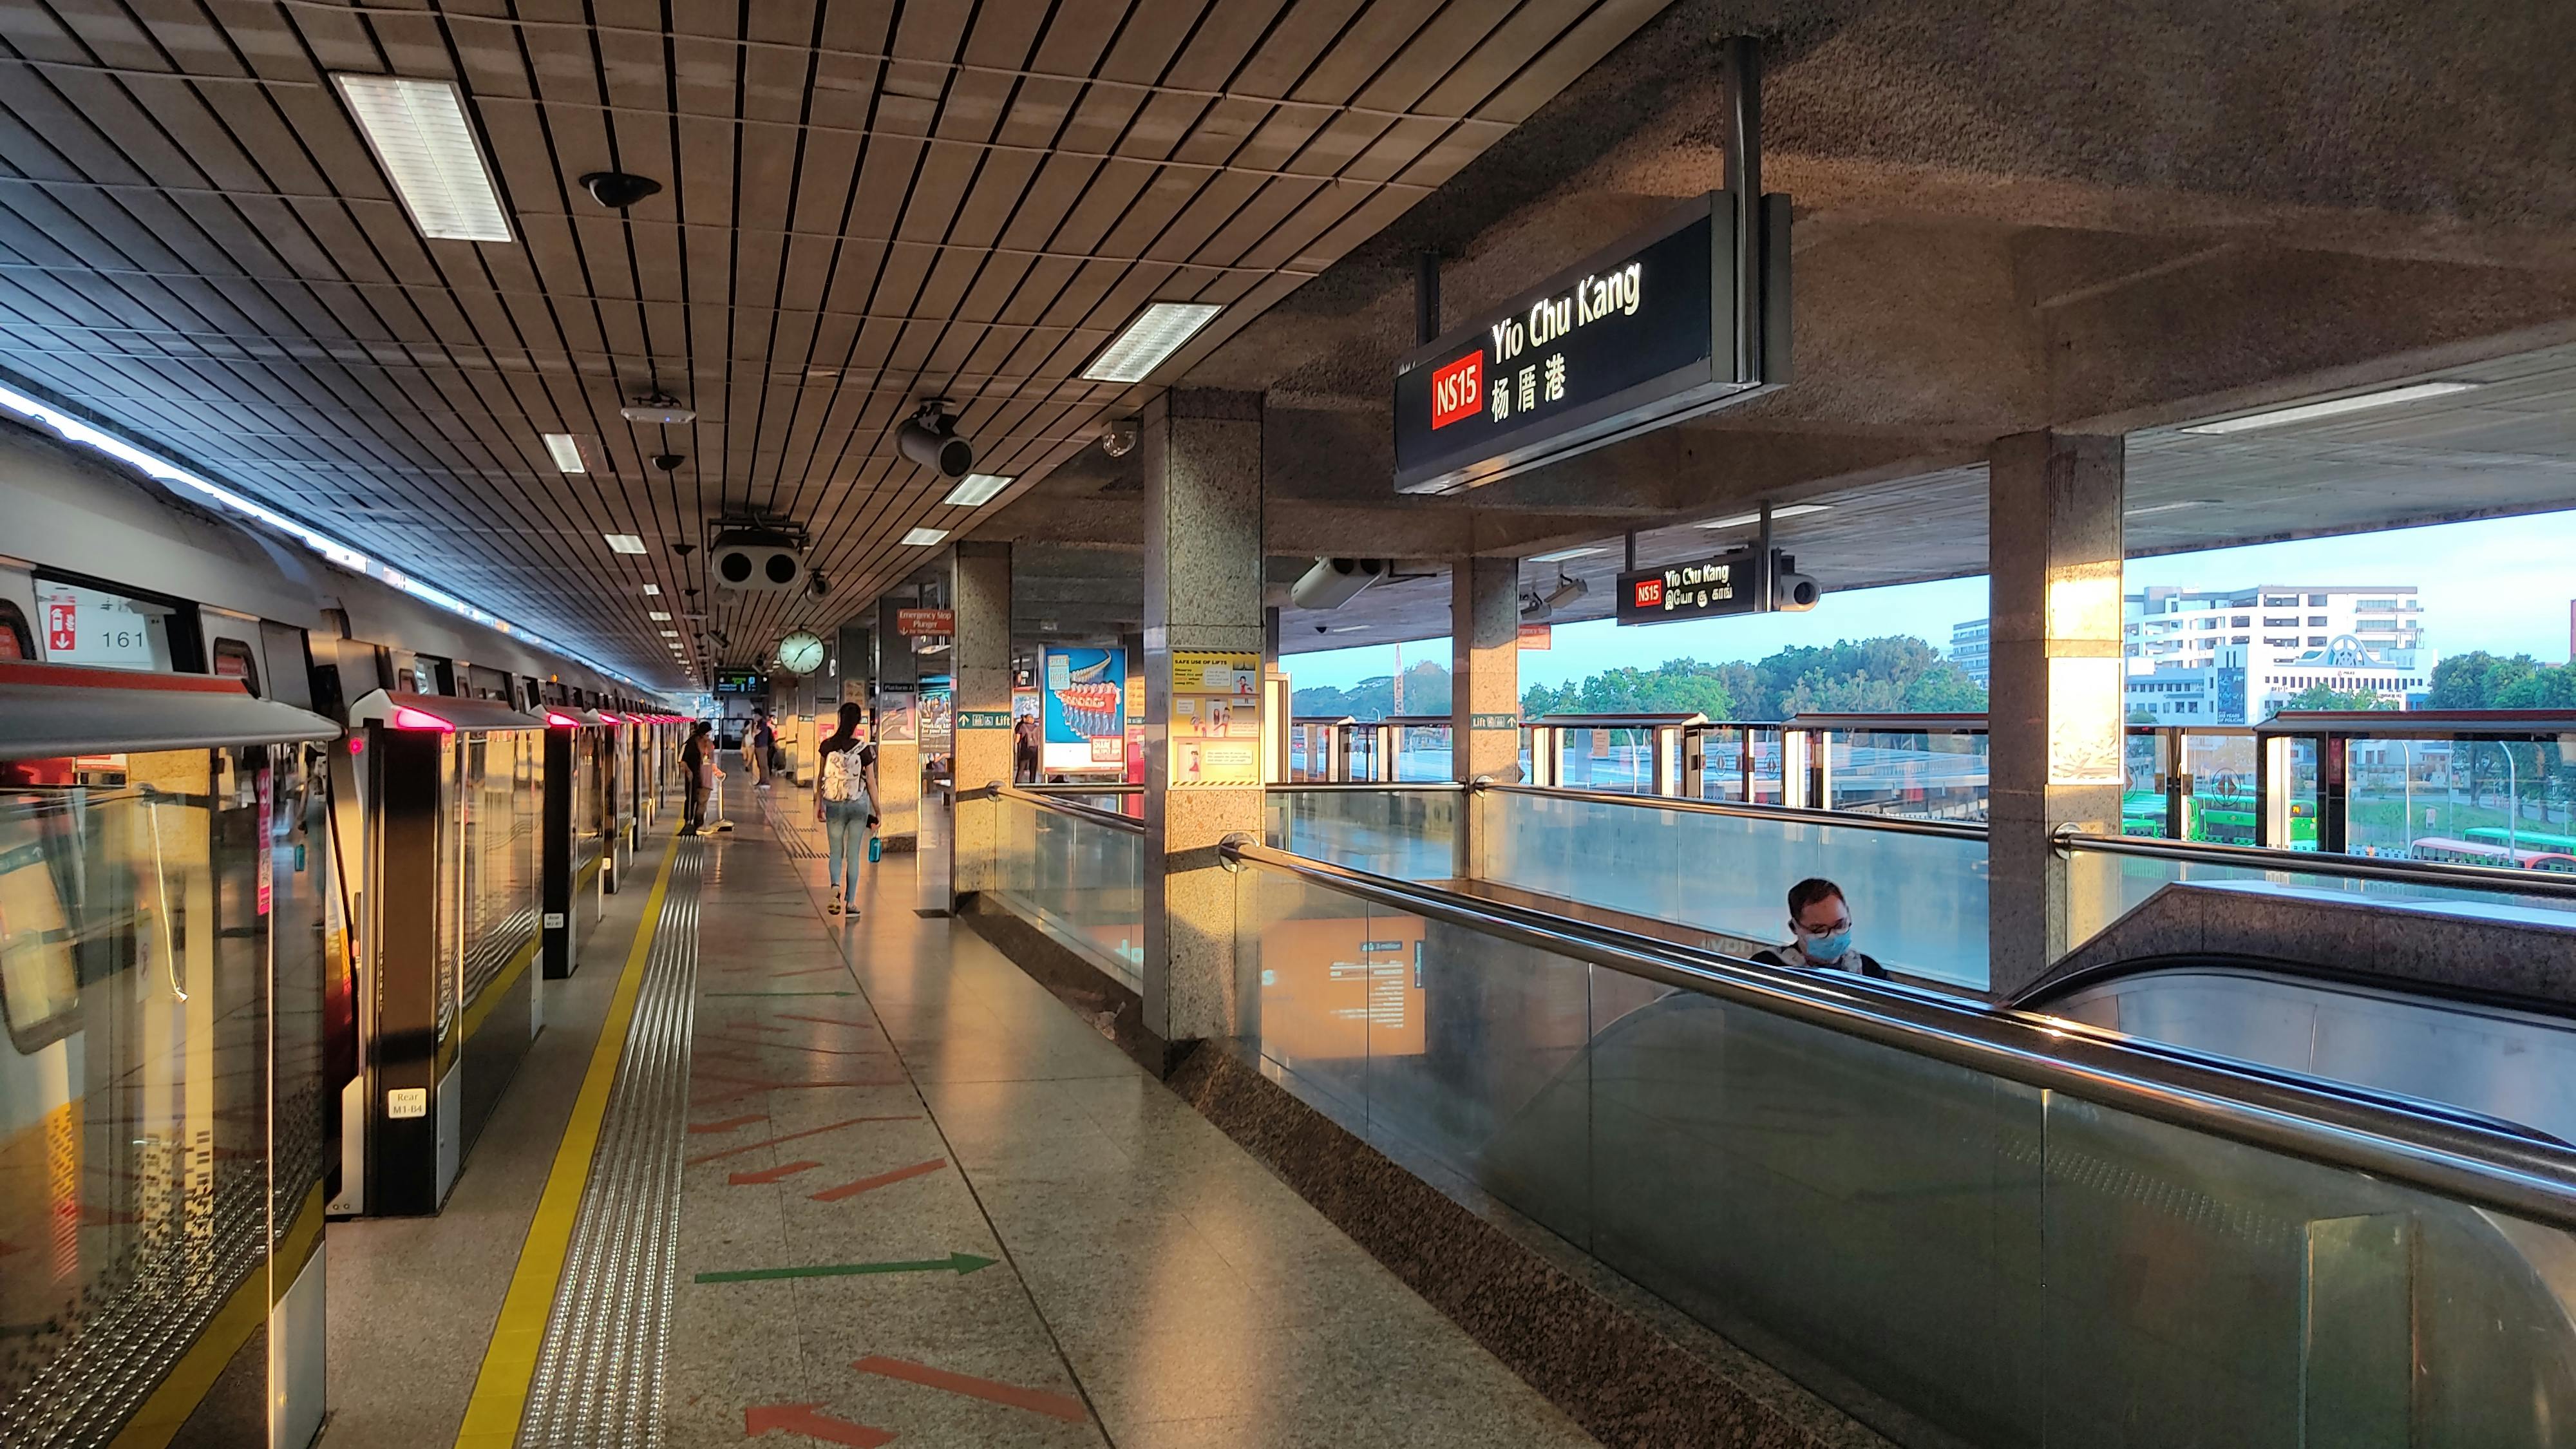 Yio Chu Kang MRT Station